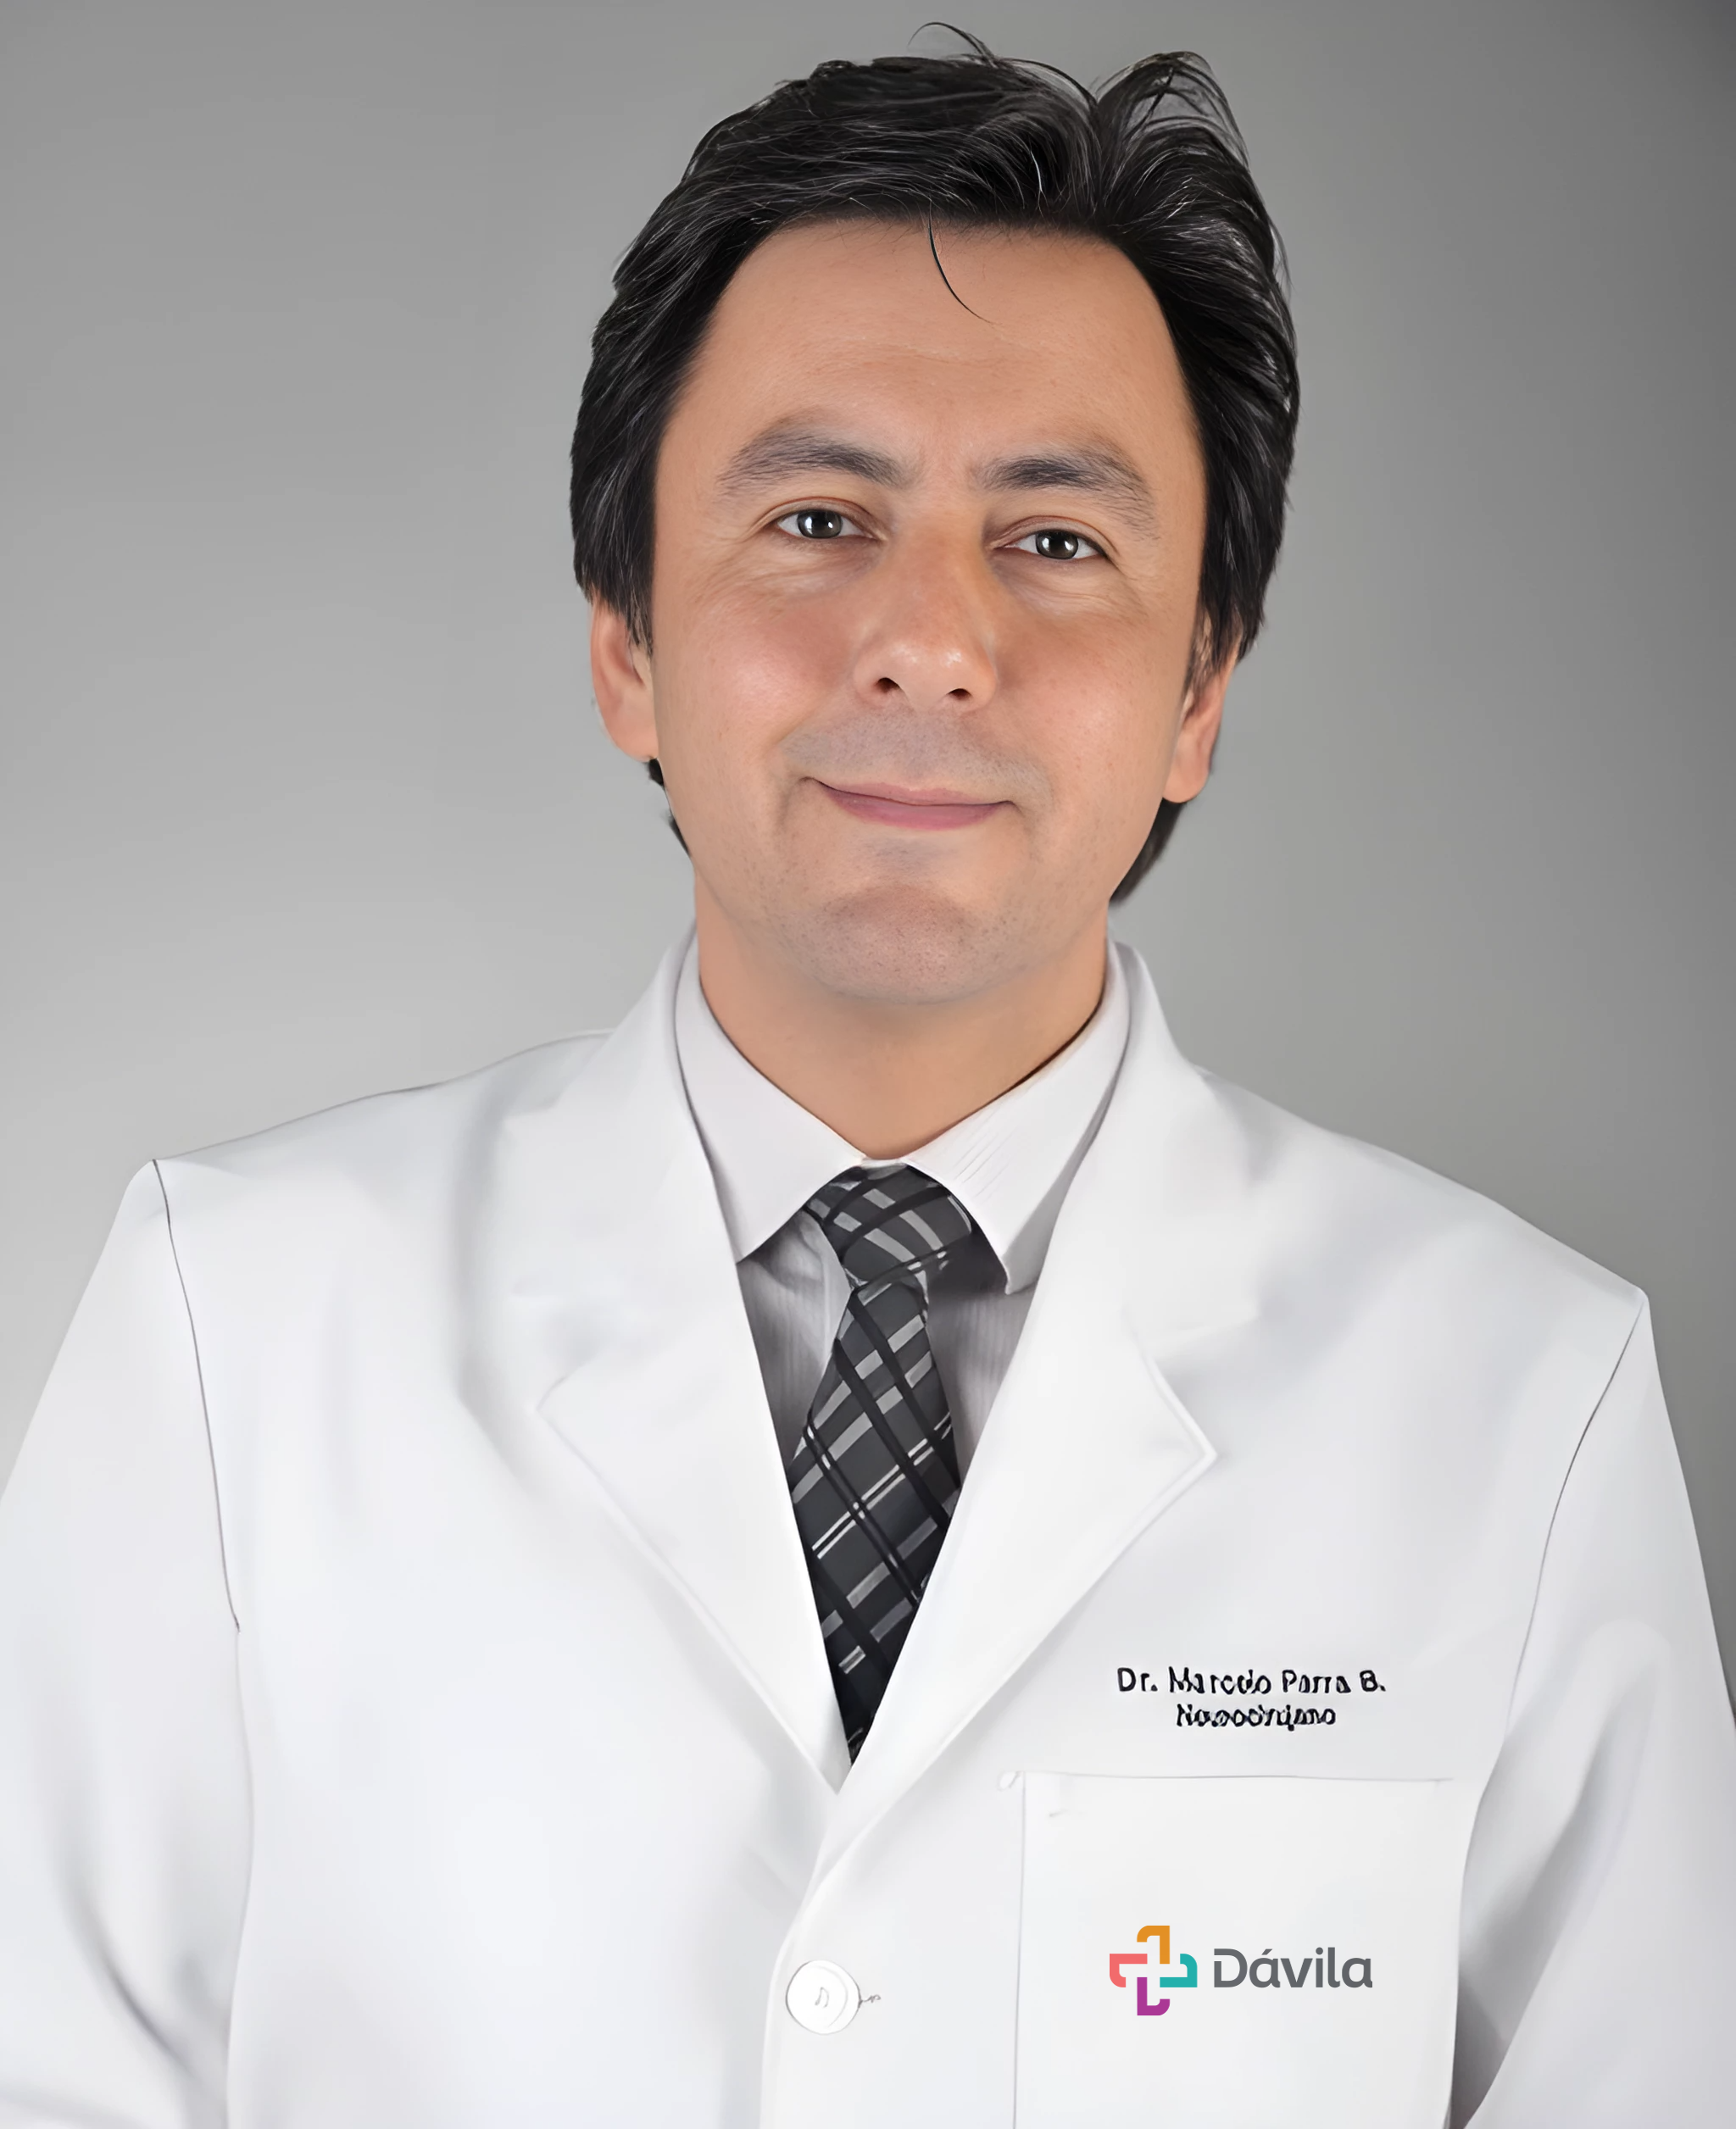 Dr. Marcelo Parra